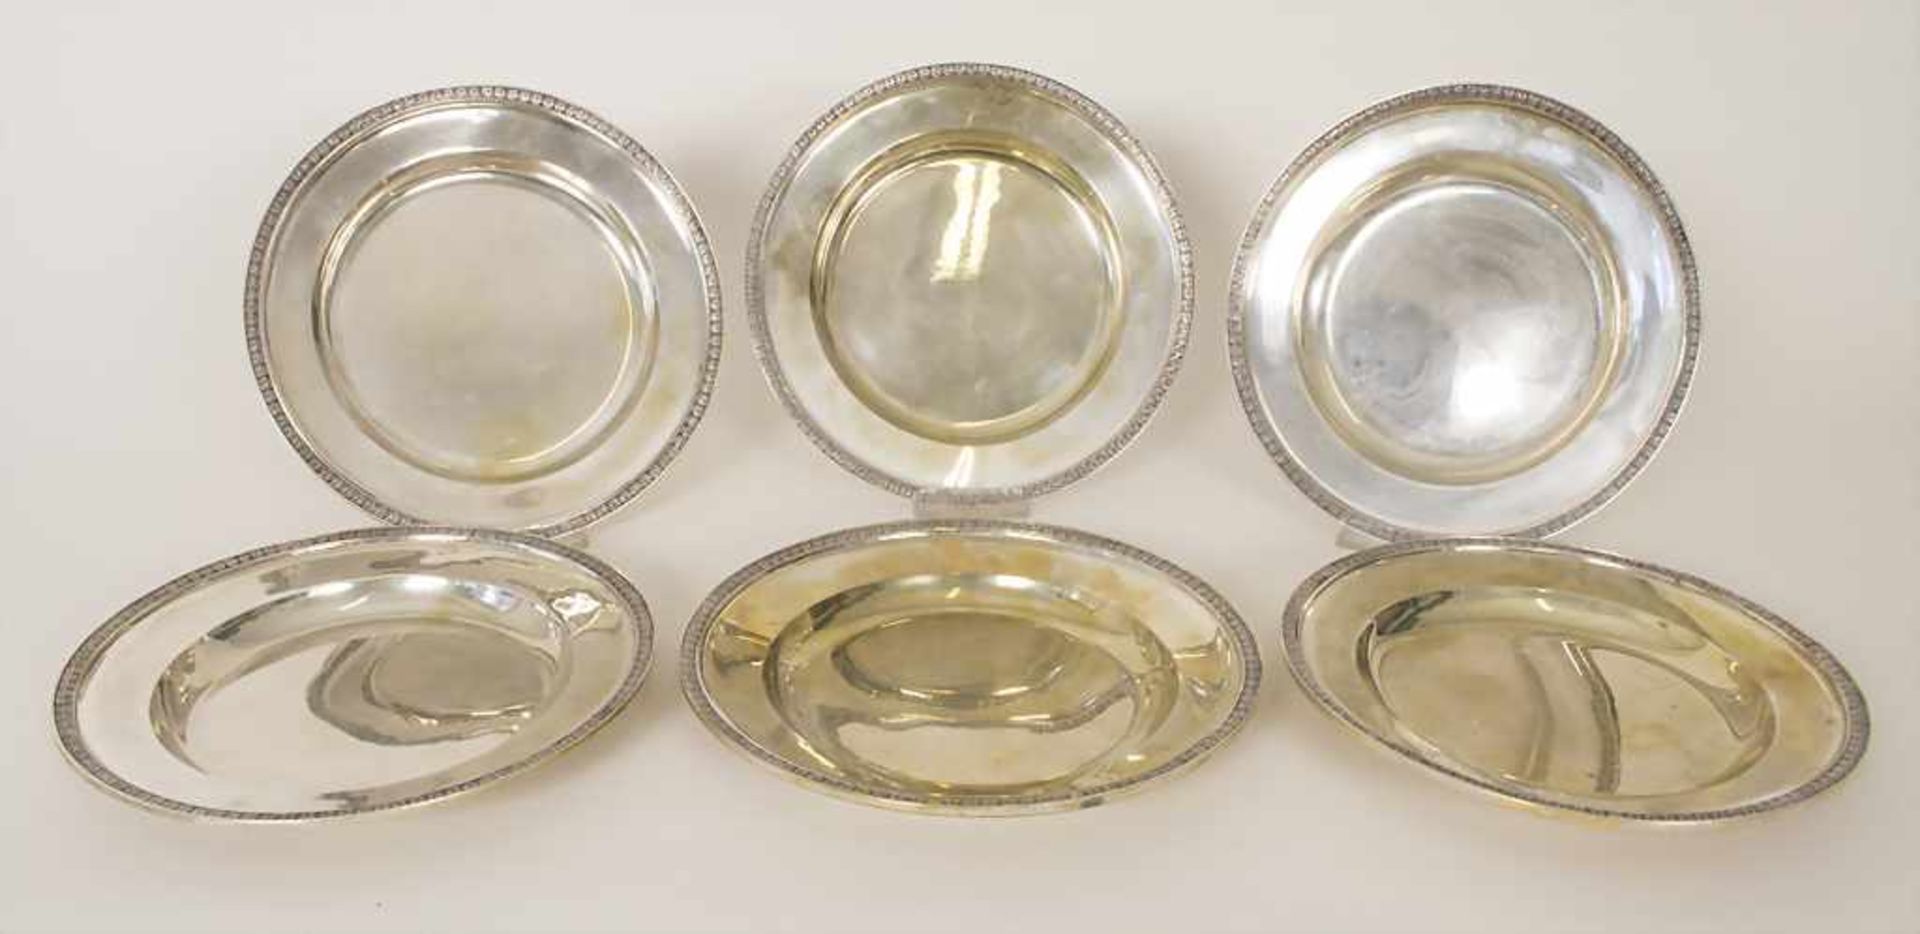 6 Silberteller / 6 silver plates, Johann Christian Sick, Stuttgart, um 1810Material: Silber 13